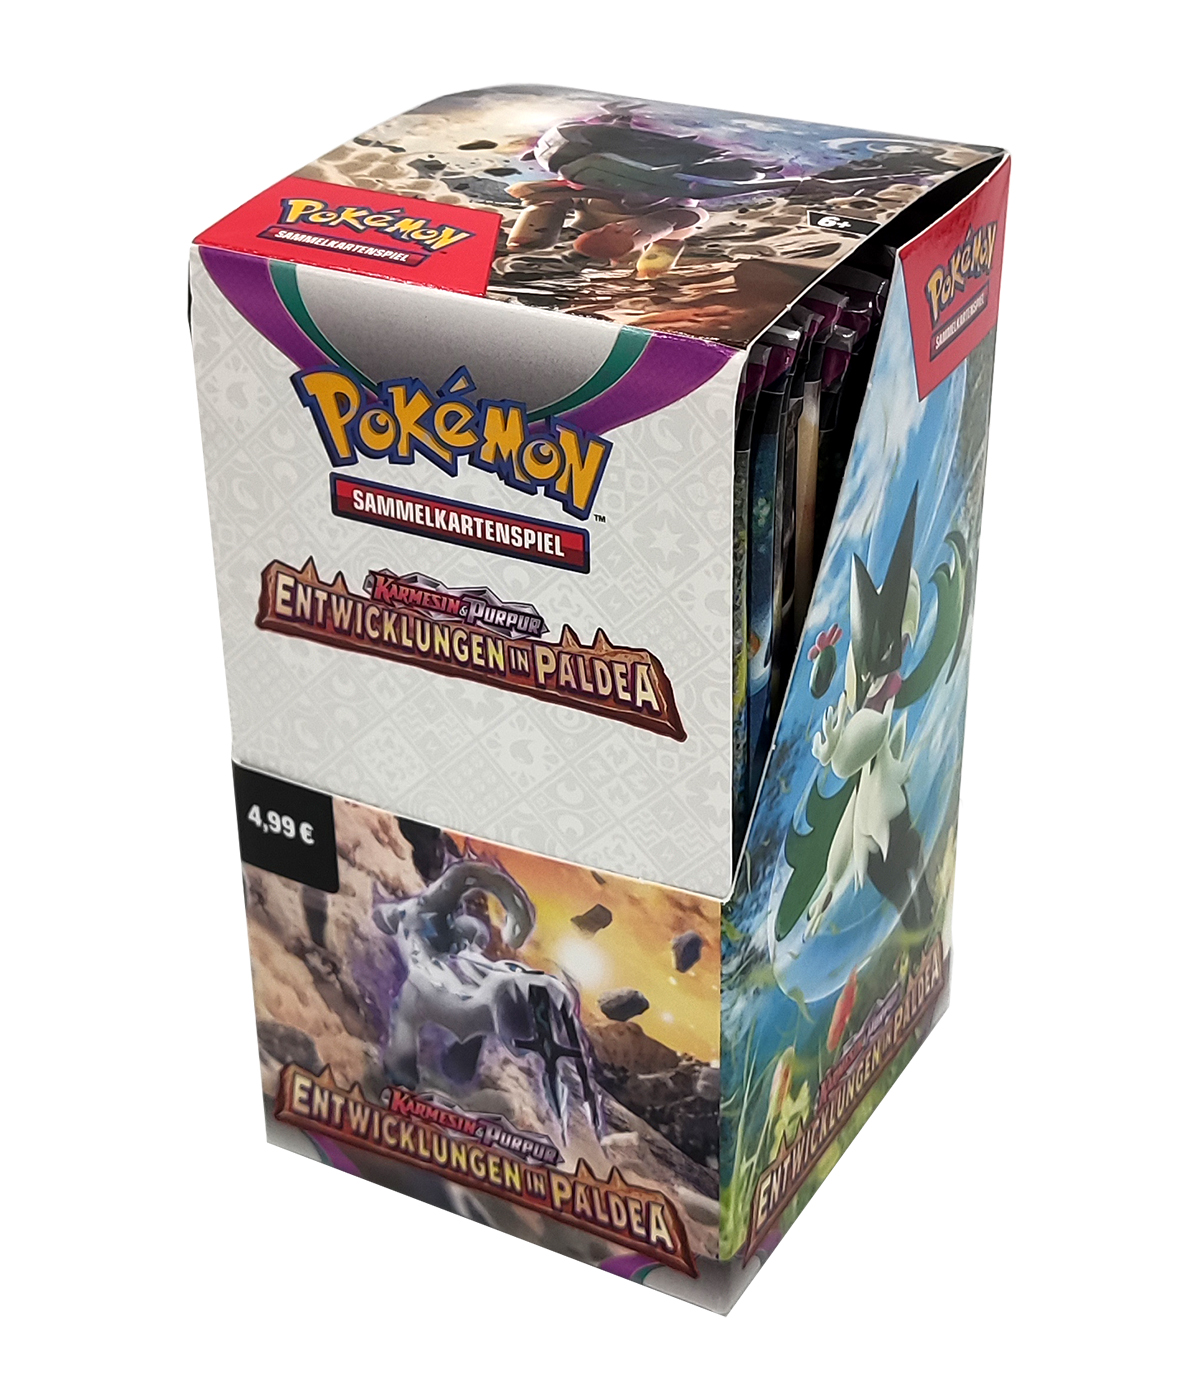 Pokémon "Entwicklungen in Paldea" - Display mit 18 Boosterpacks